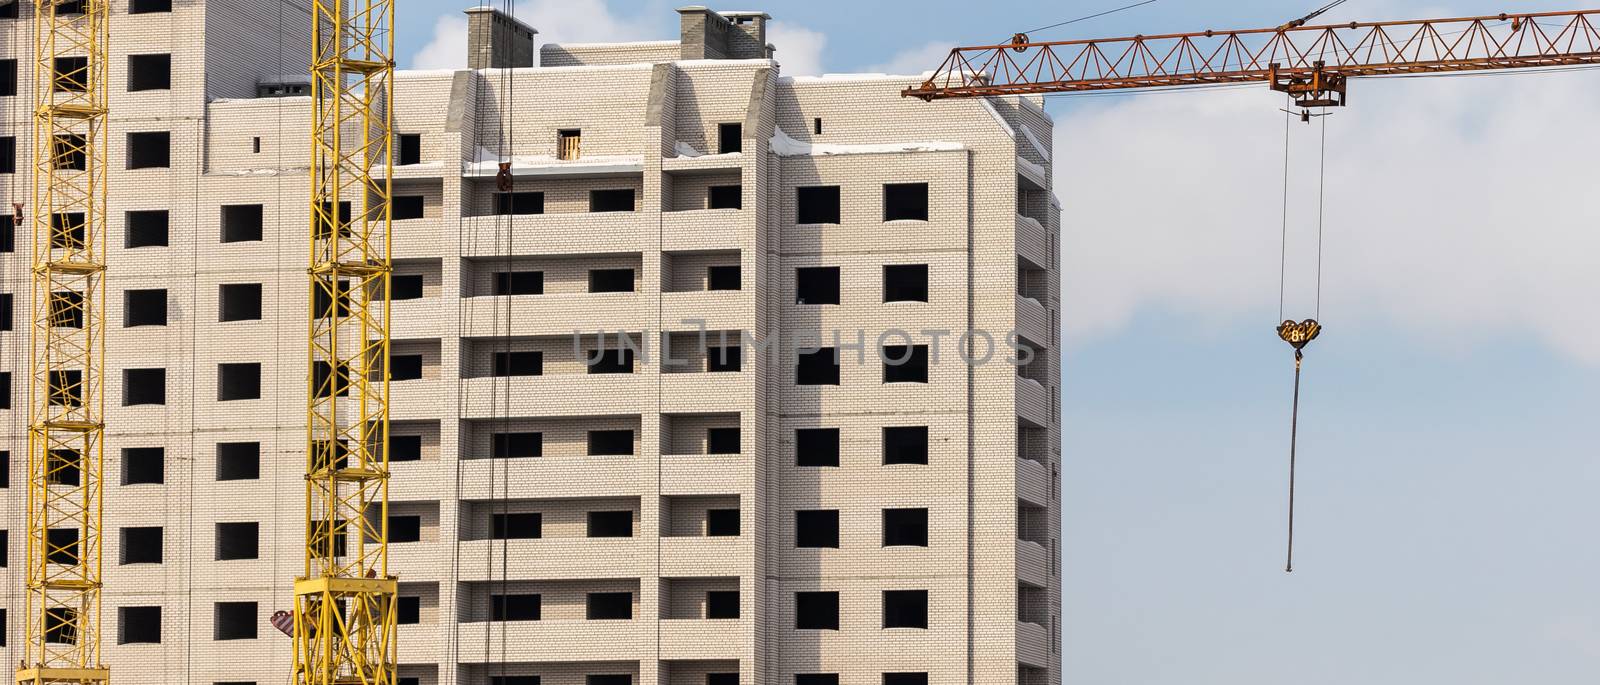 Construction site. Apartment building and cranes by DamantisZ